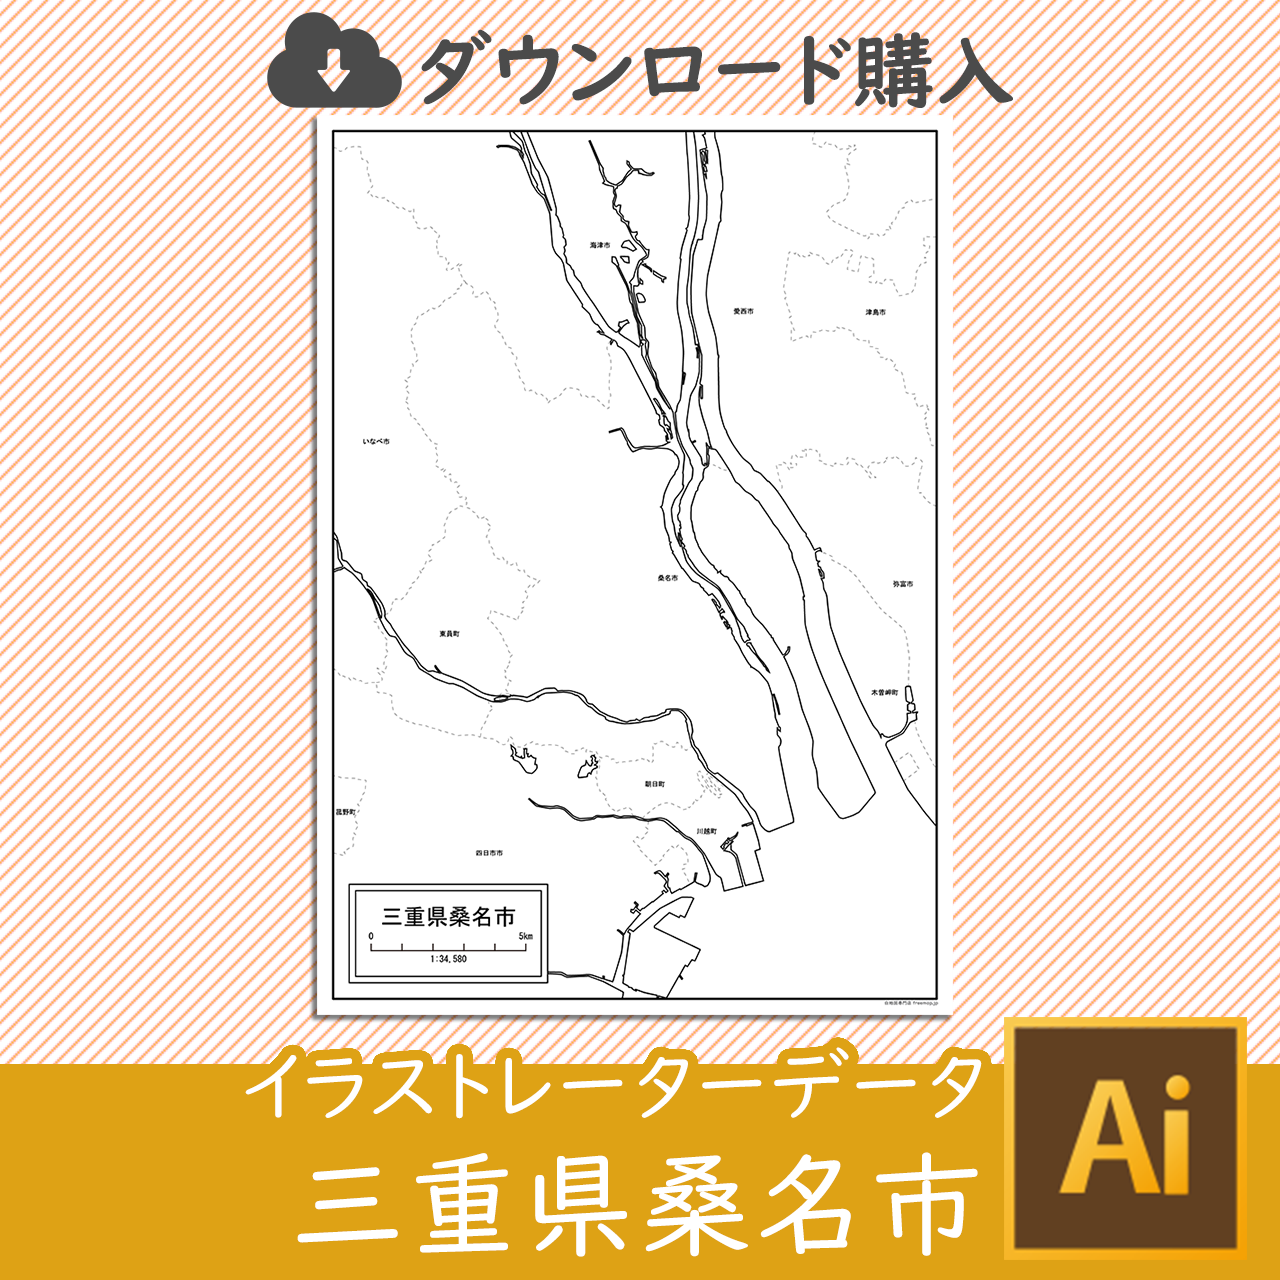 桑名市のaiデータのサムネイル画像